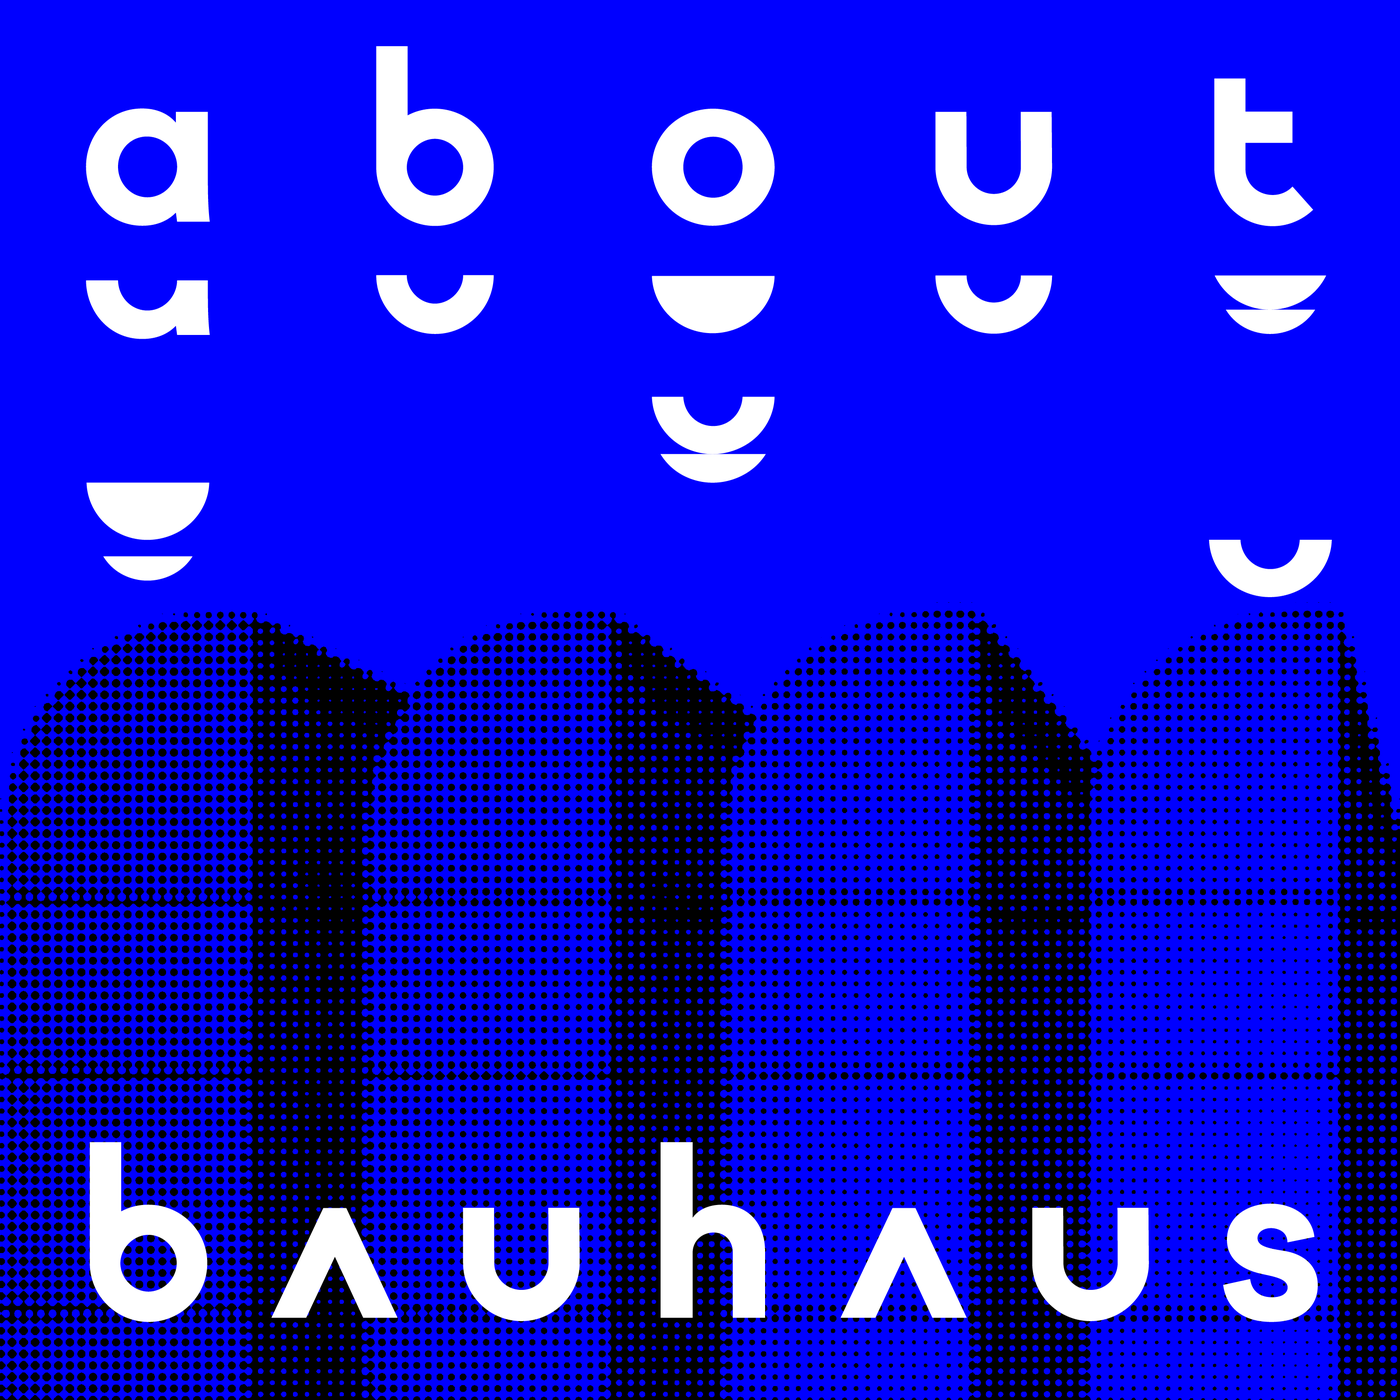 About Bauhaus